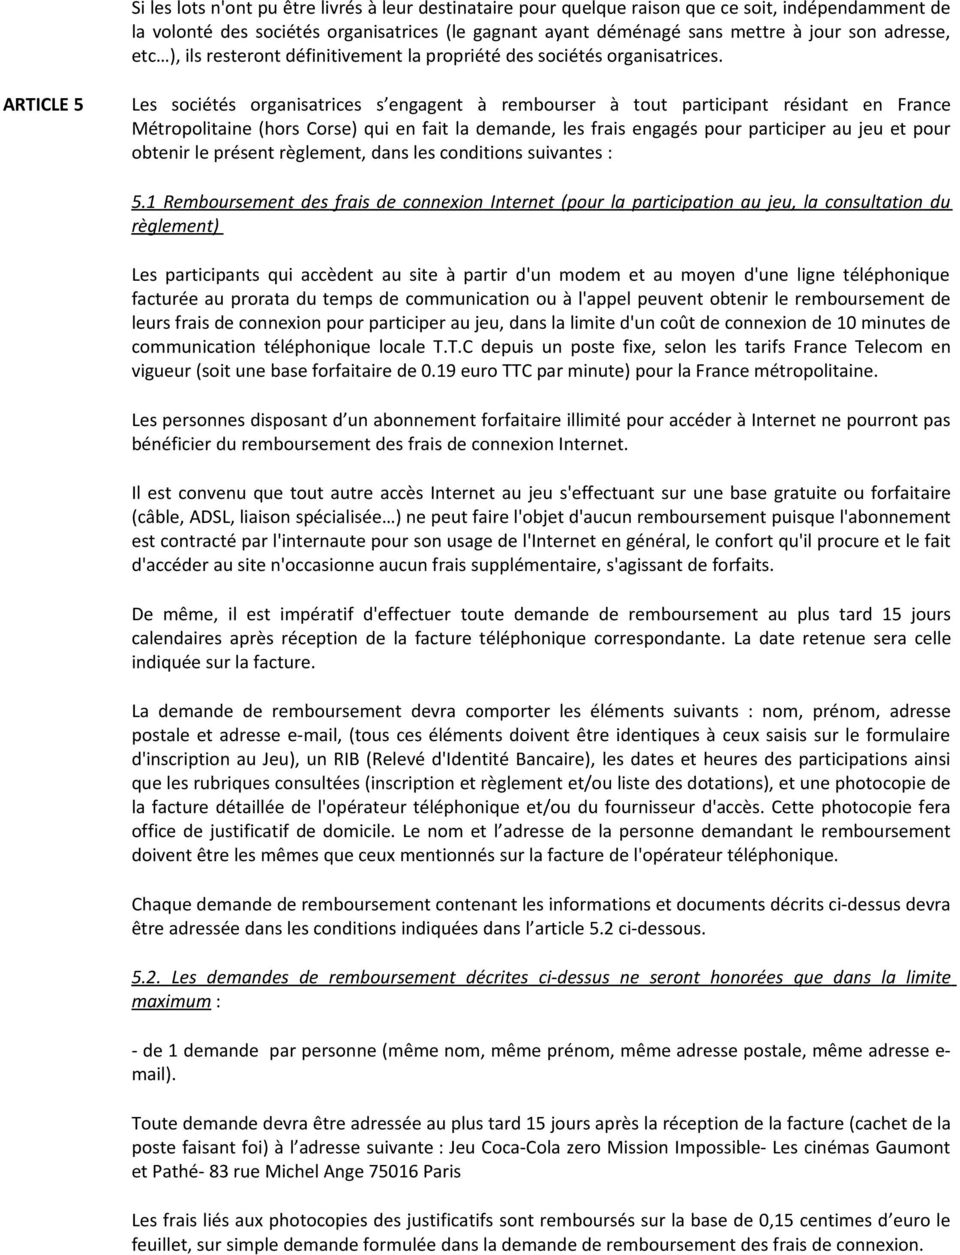 ARTICLE 5 Les sociétés organisatrices s engagent à rembourser à tout participant résidant en France Métropolitaine (hors Corse) qui en fait la demande, les frais engagés pour participer au jeu et